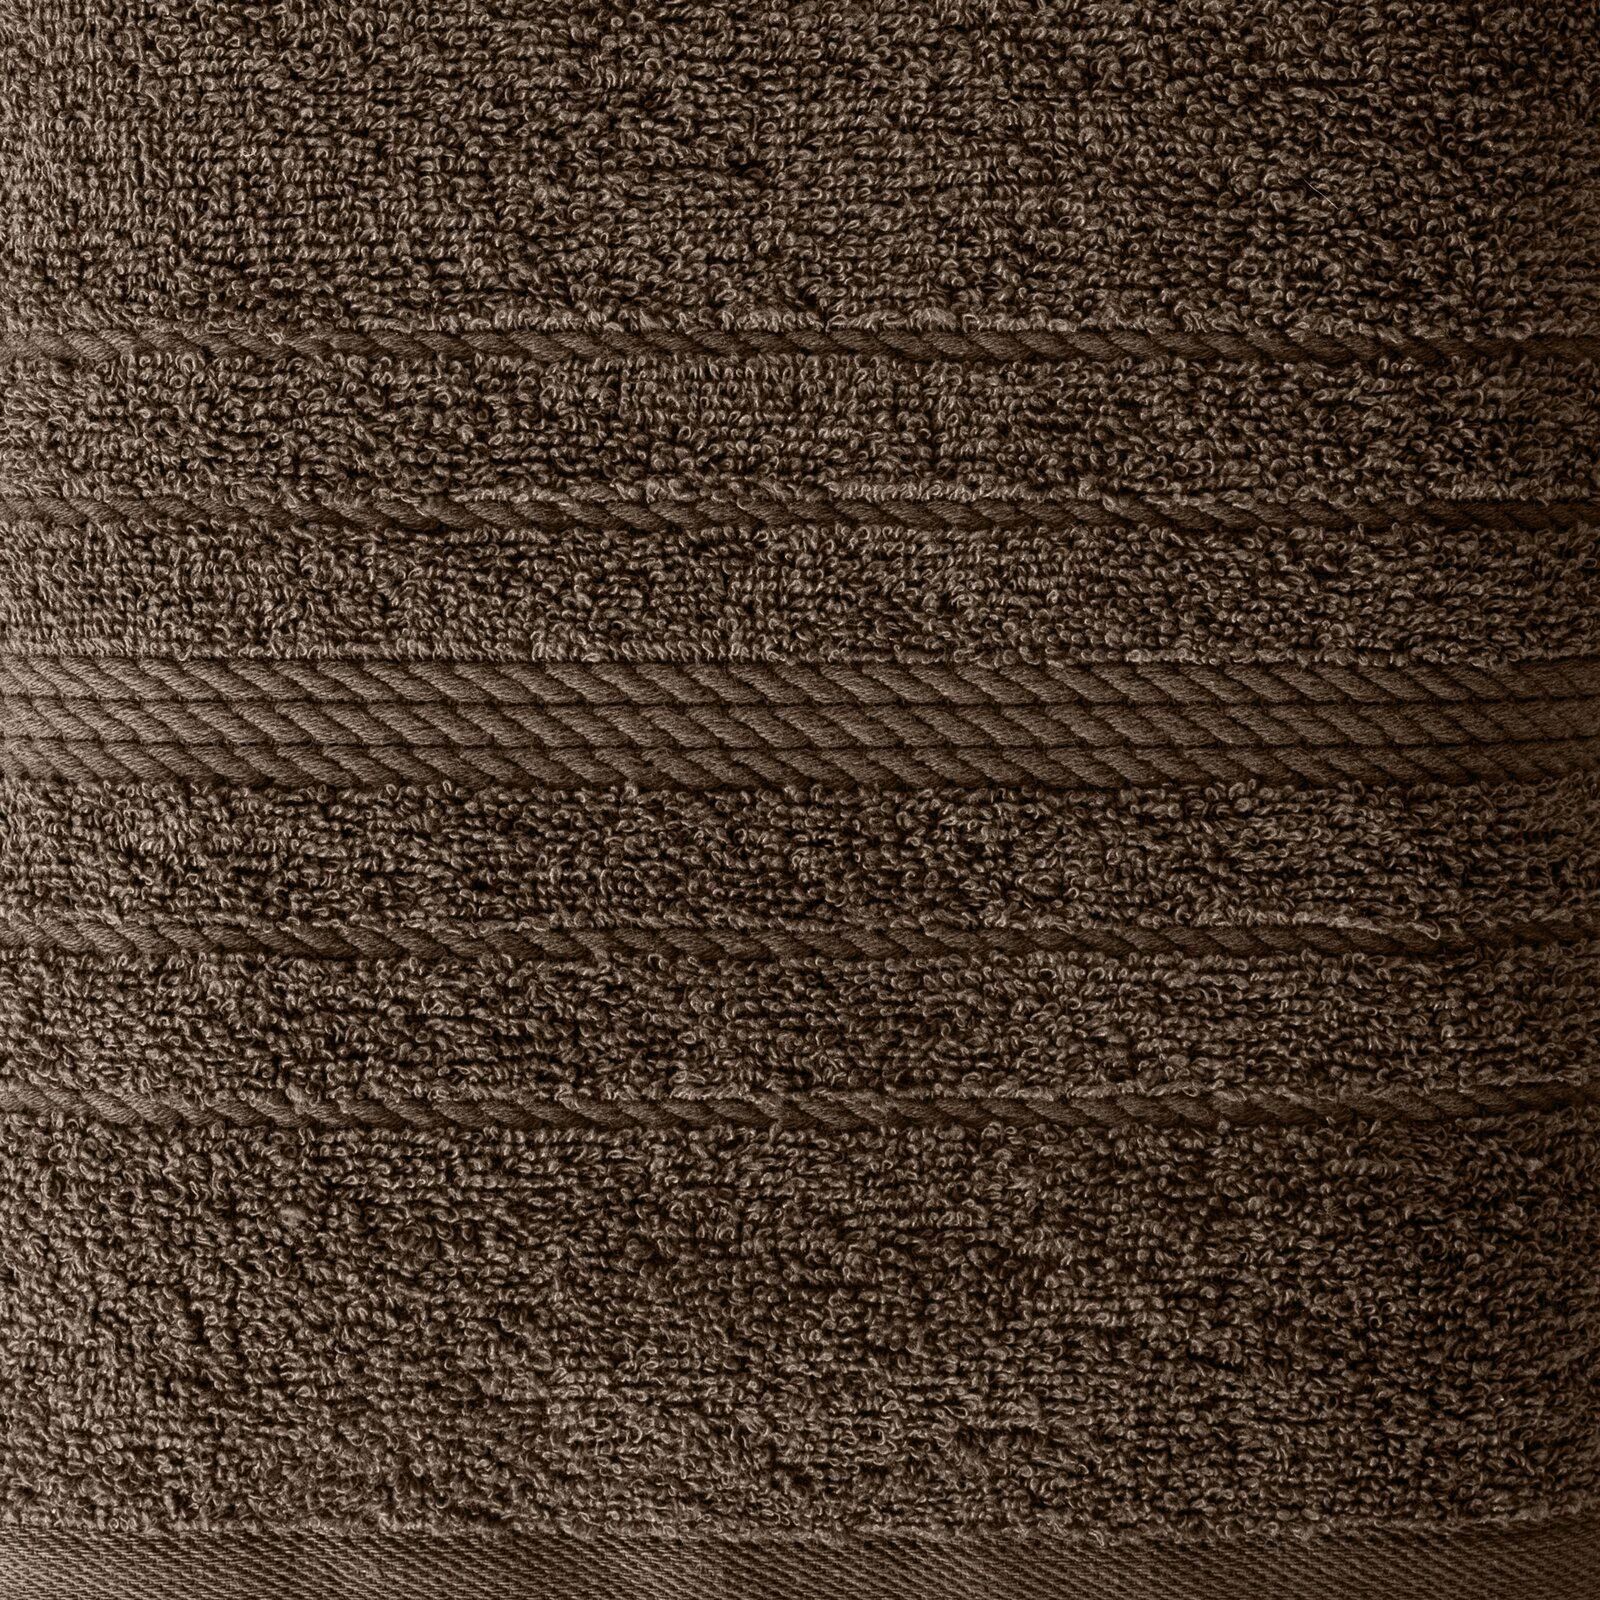 Ręcznik Elma 70x140 brązowy frotte 450g/m2